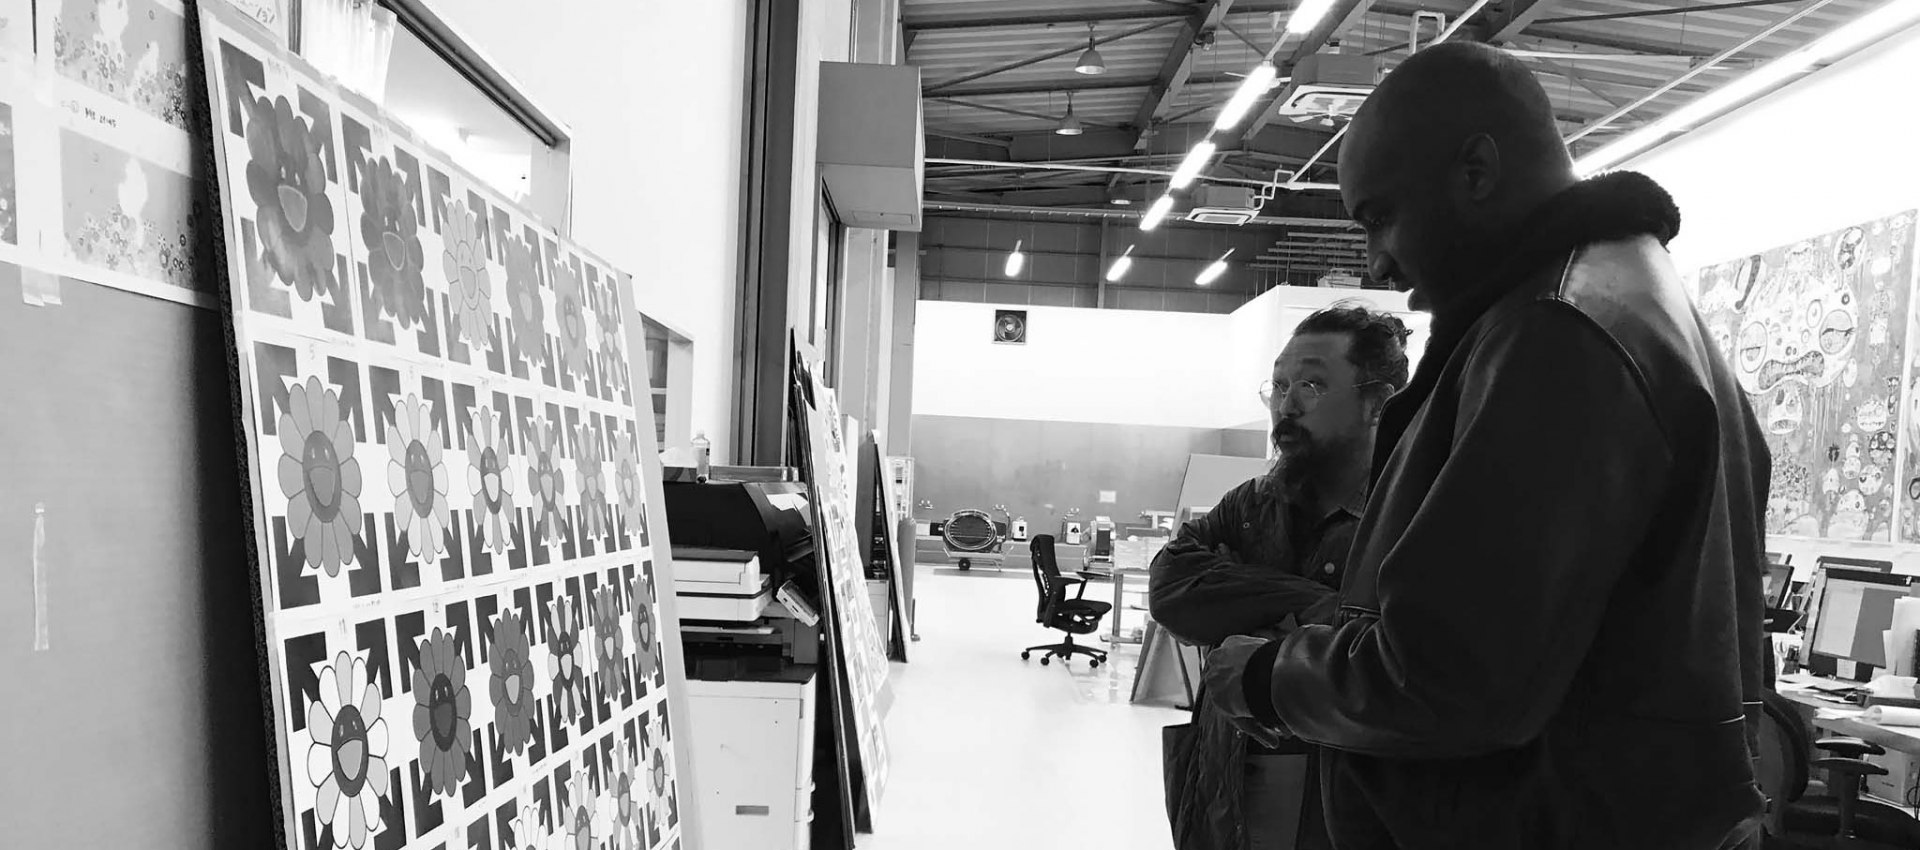 Virgil Abloh Reveals His Design Philosophy for Louis Vuitton